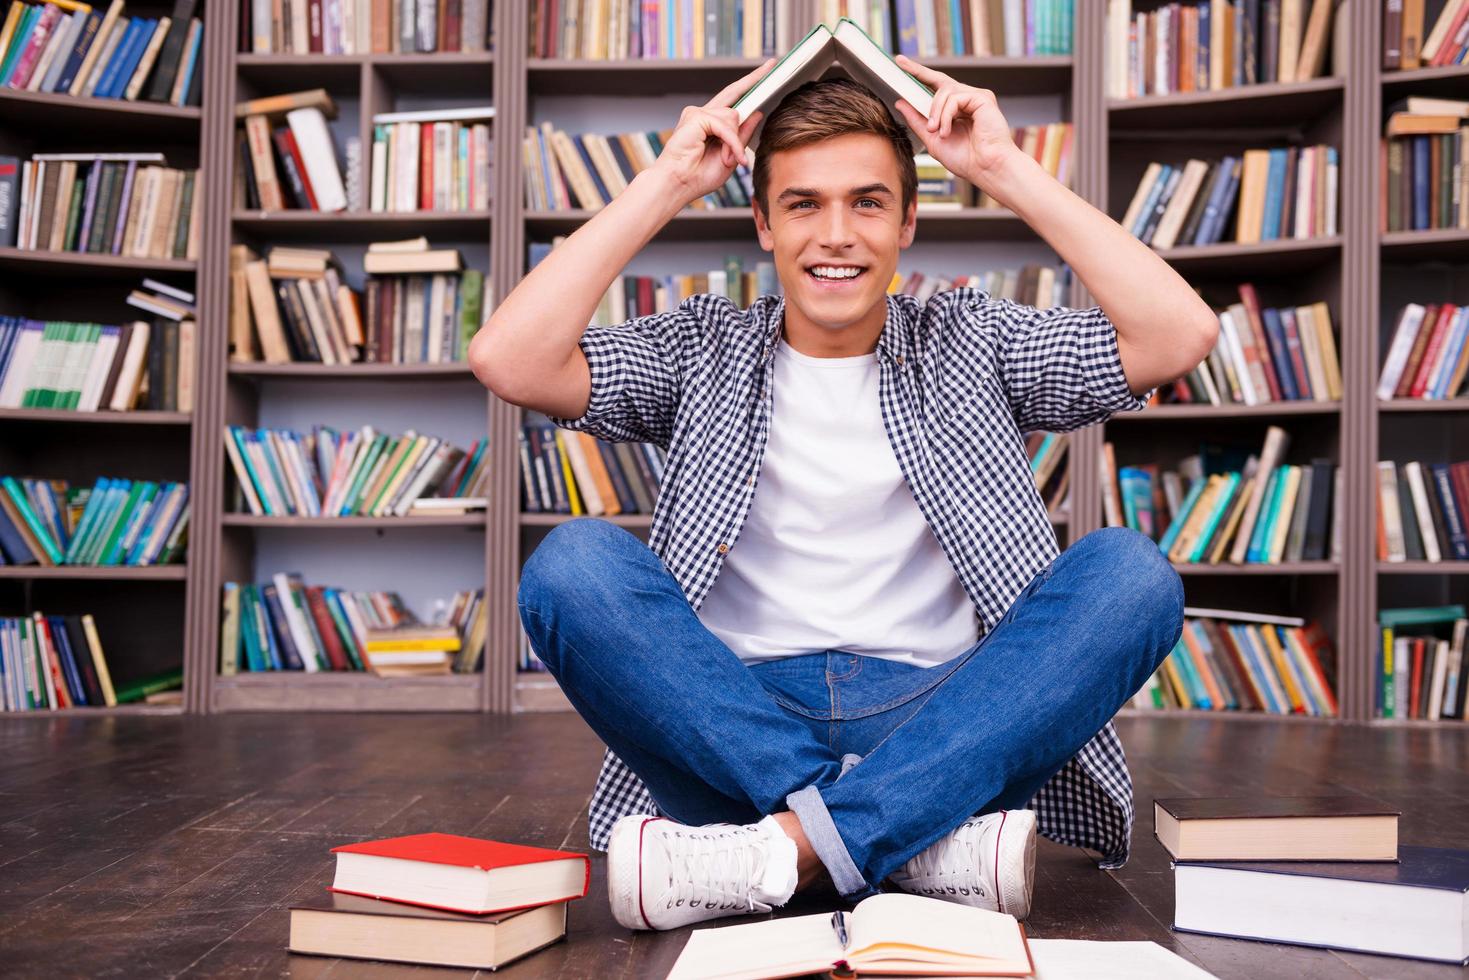 verspielter Schüler. Verspielter junger Mann, der ein Buch auf dem Kopf trägt und lächelt, während er gegen ein Bücherregal sitzt foto